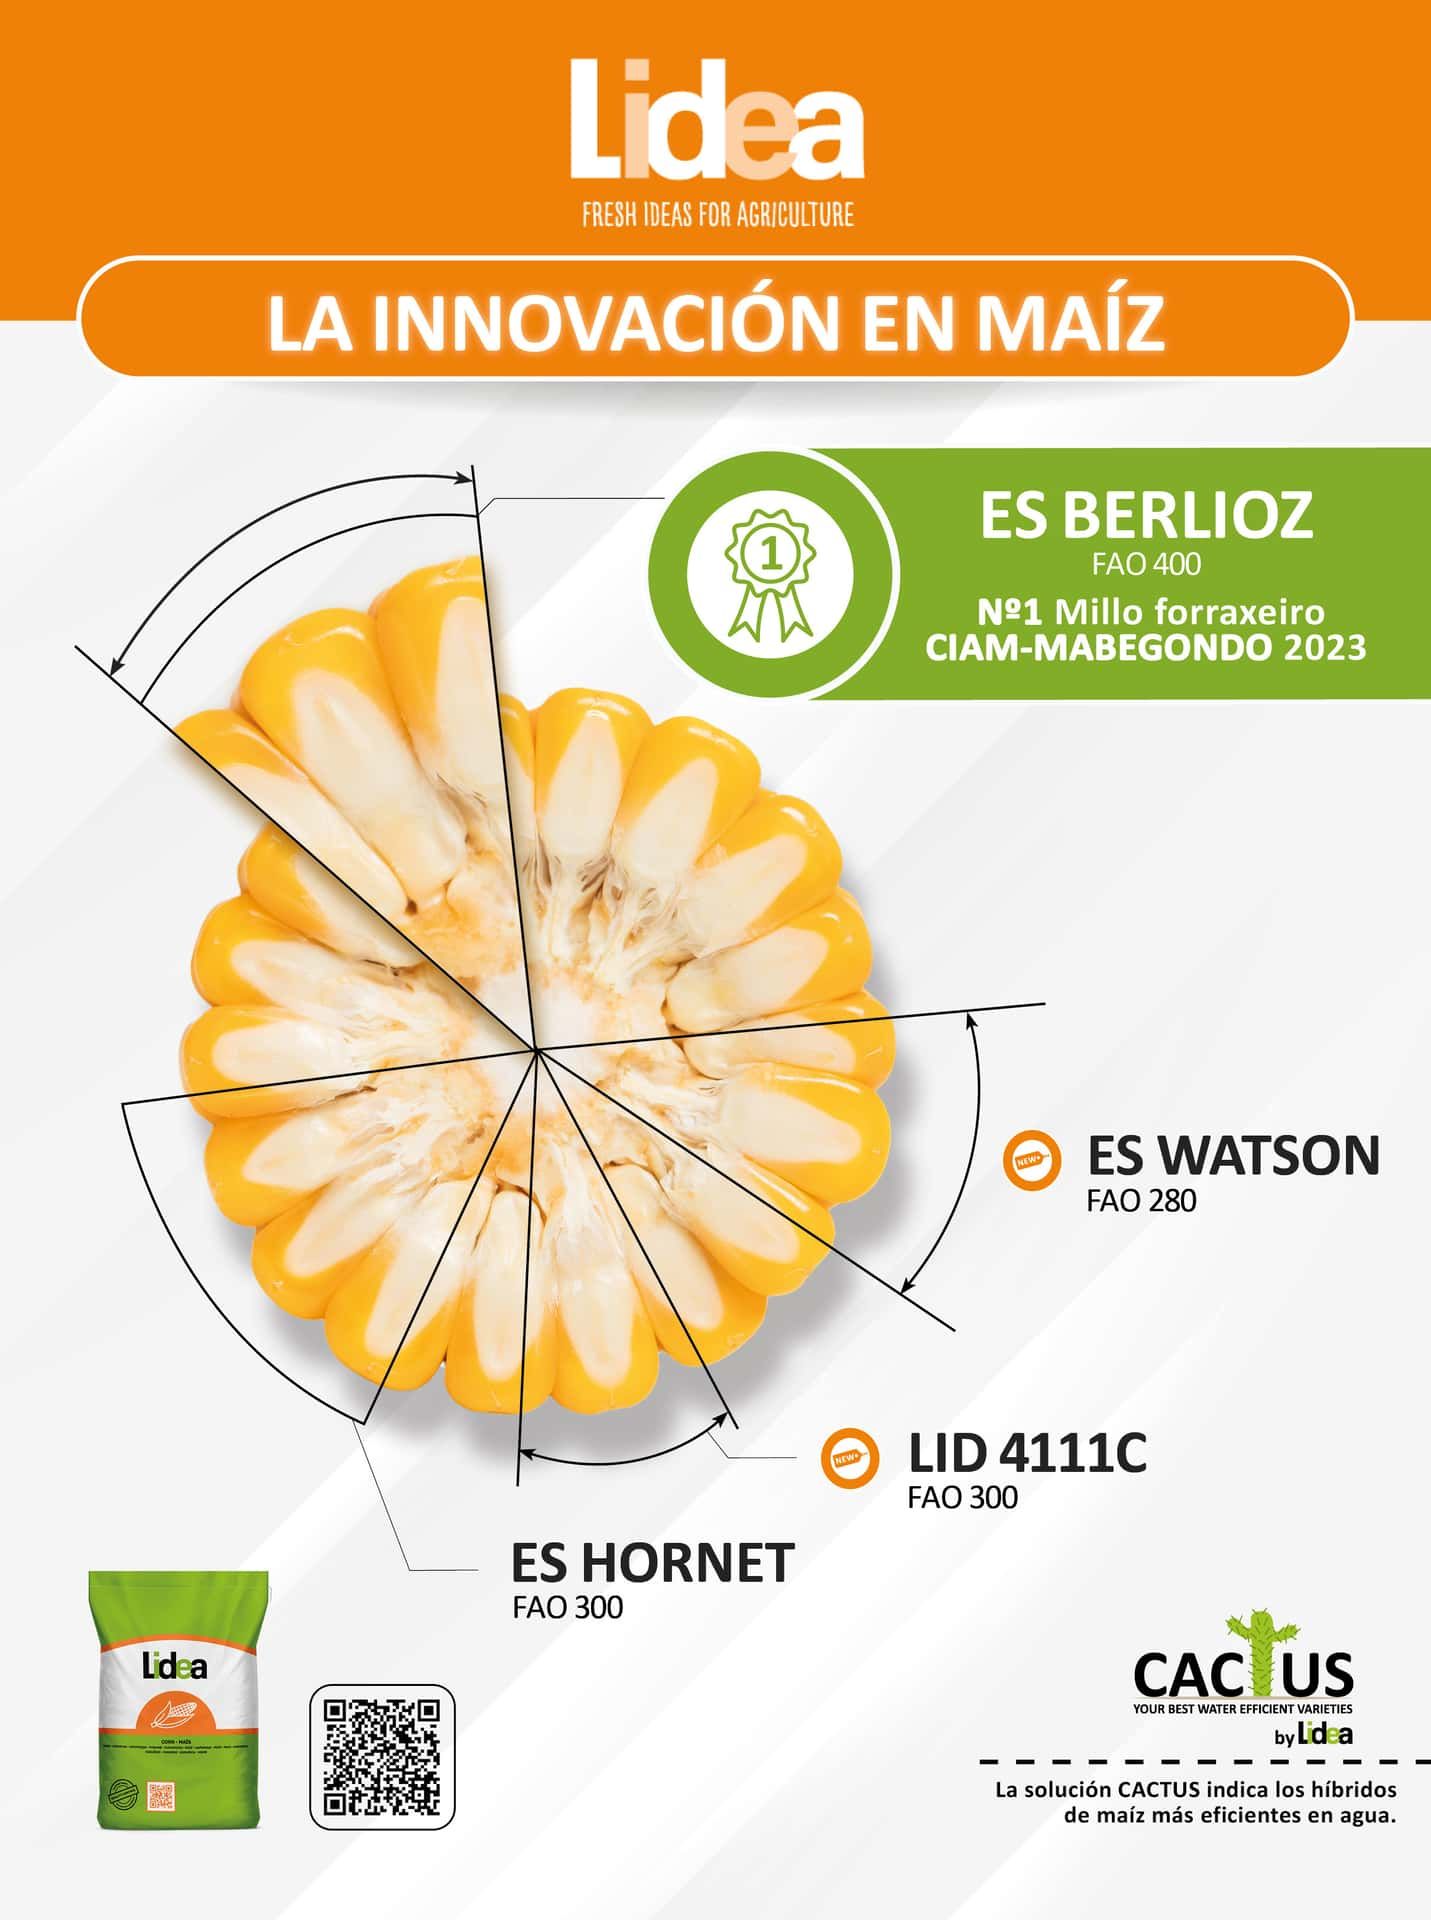 La innovación en maíz